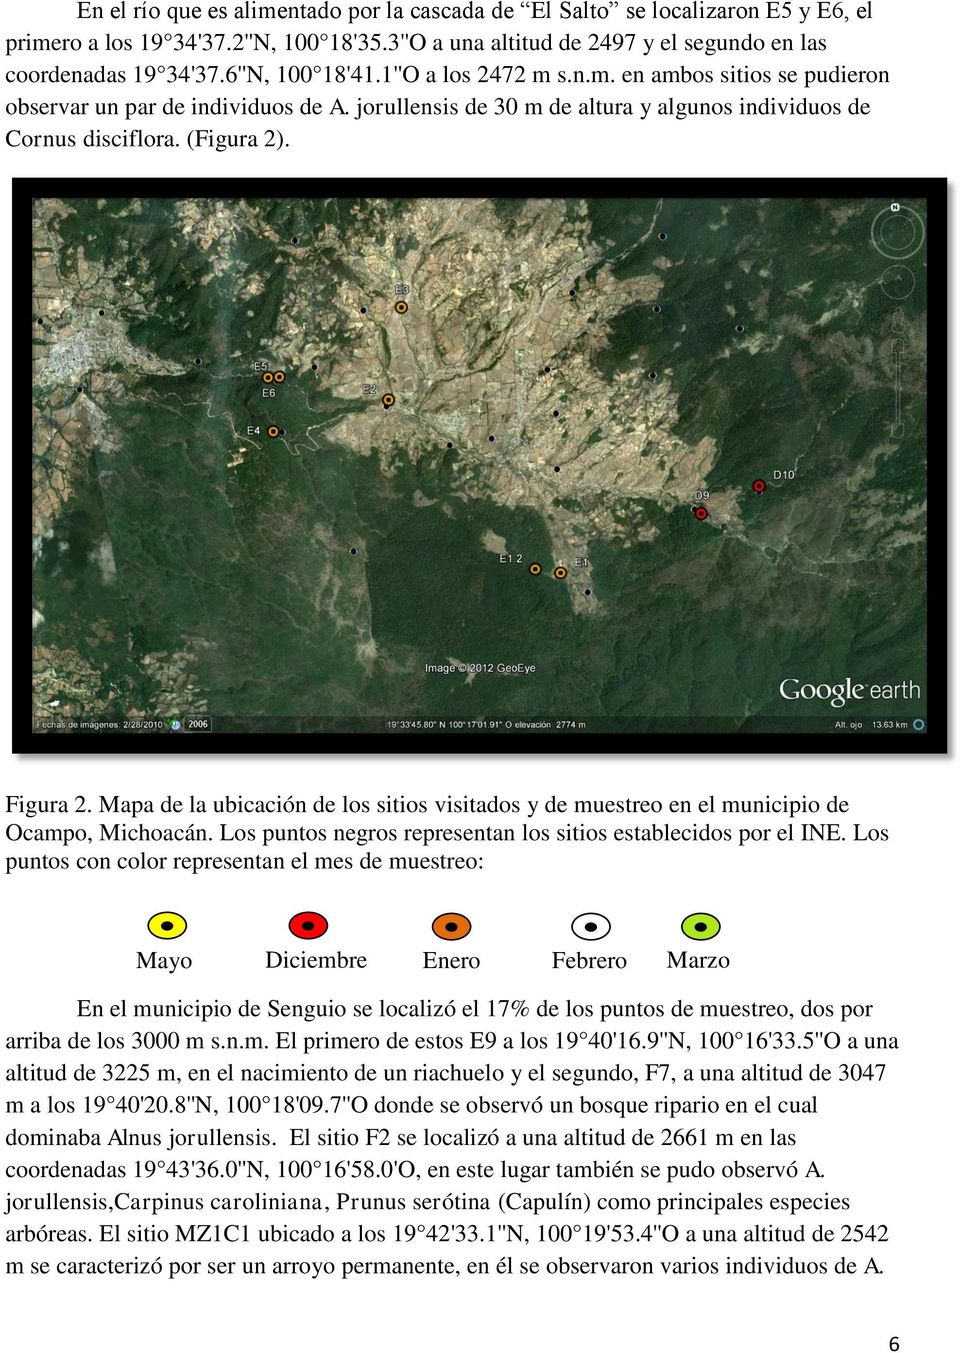 Mapa de la ubicación de los sitios visitados y de muestreo en el municipio de Ocampo, Michoacán. Los puntos negros representan los sitios establecidos por el INE.